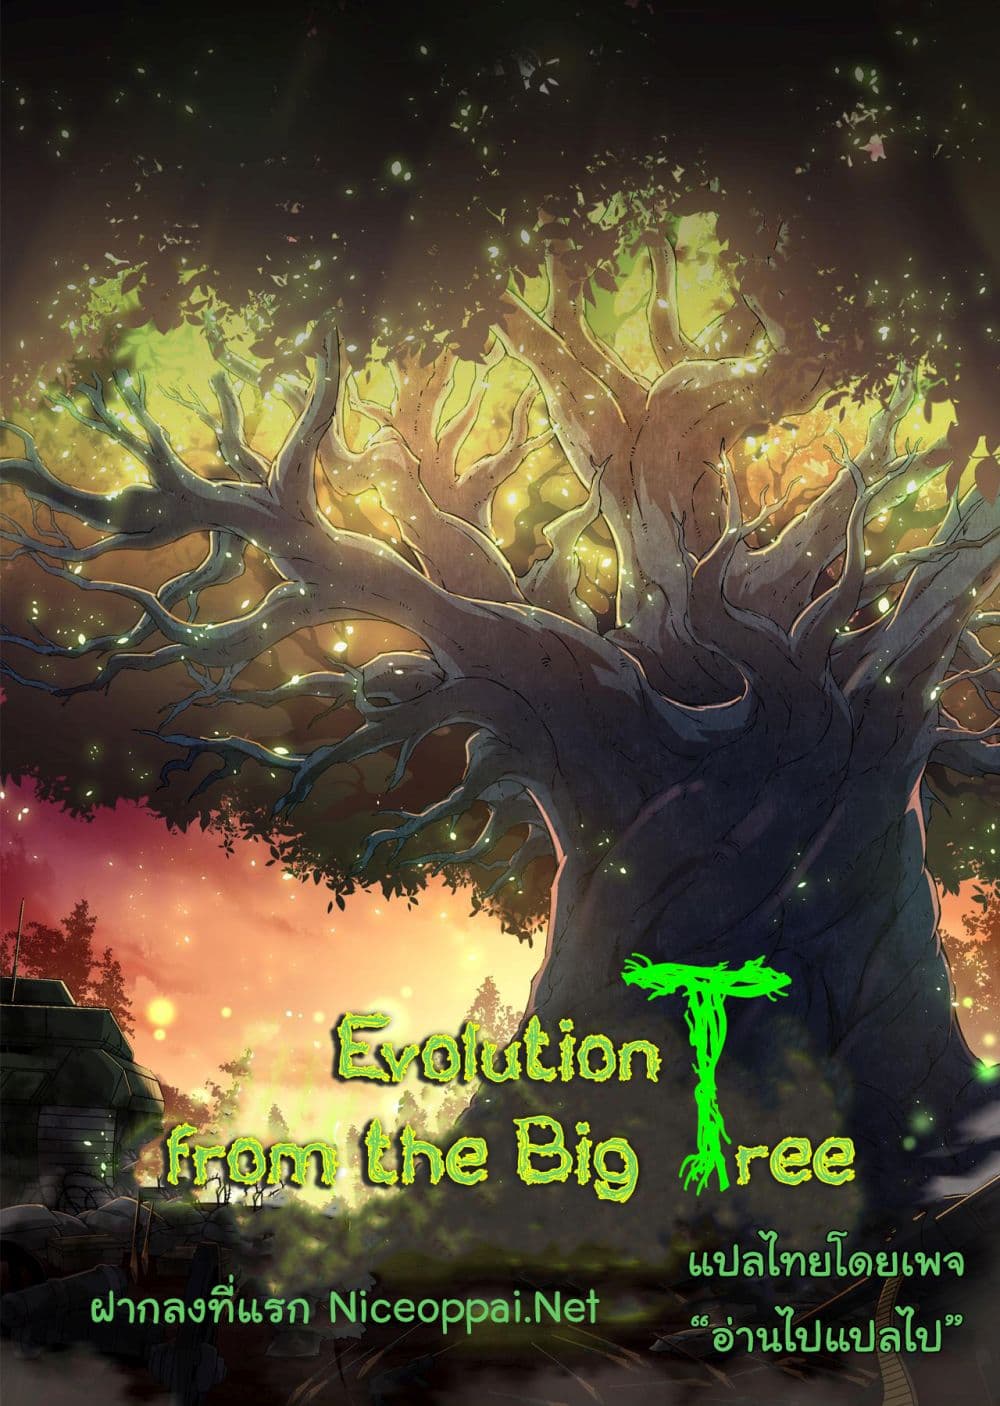 Evolution from the Big Tree Ã Â¸â€¢Ã Â¸Â­Ã Â¸â„¢Ã Â¸â€”Ã Â¸ÂµÃ Â¹Ë† 7 (52)